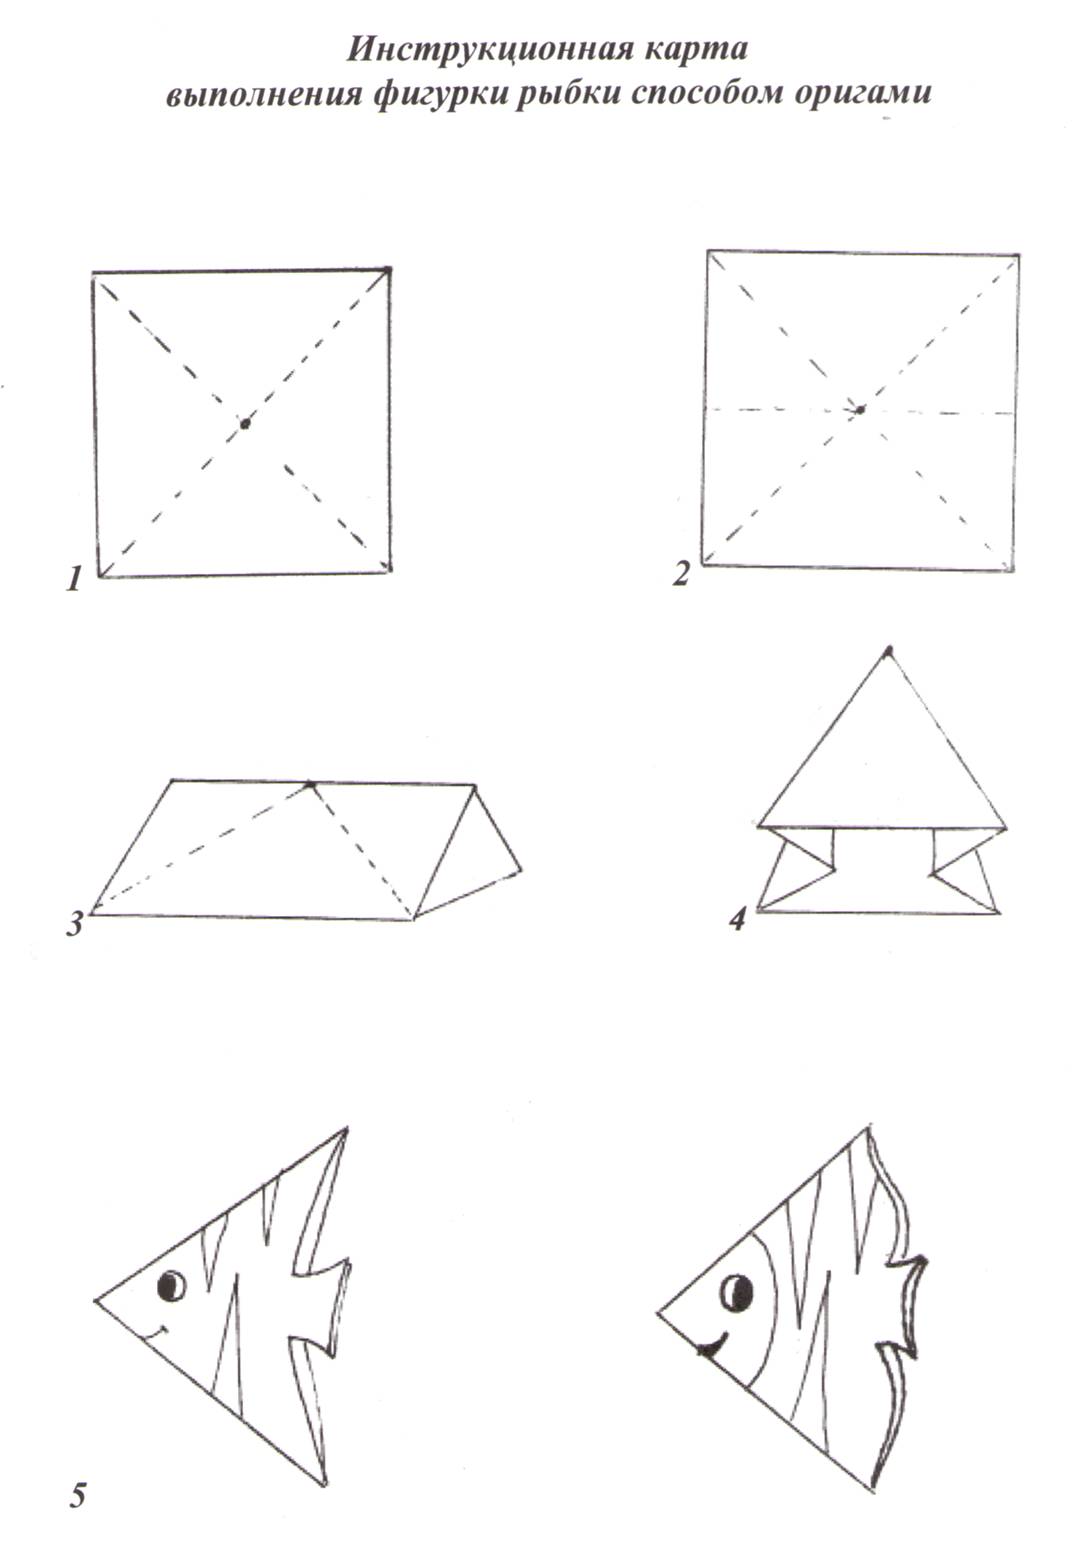 Оригами рыбка в старшей группе. Схема оригами рыбка старшая группа. Рыбка из бумаги оригами простая схема для детей. Оригами рыбка 1 класс пошагово. Схема оригами рыбка в подготовительной группе.